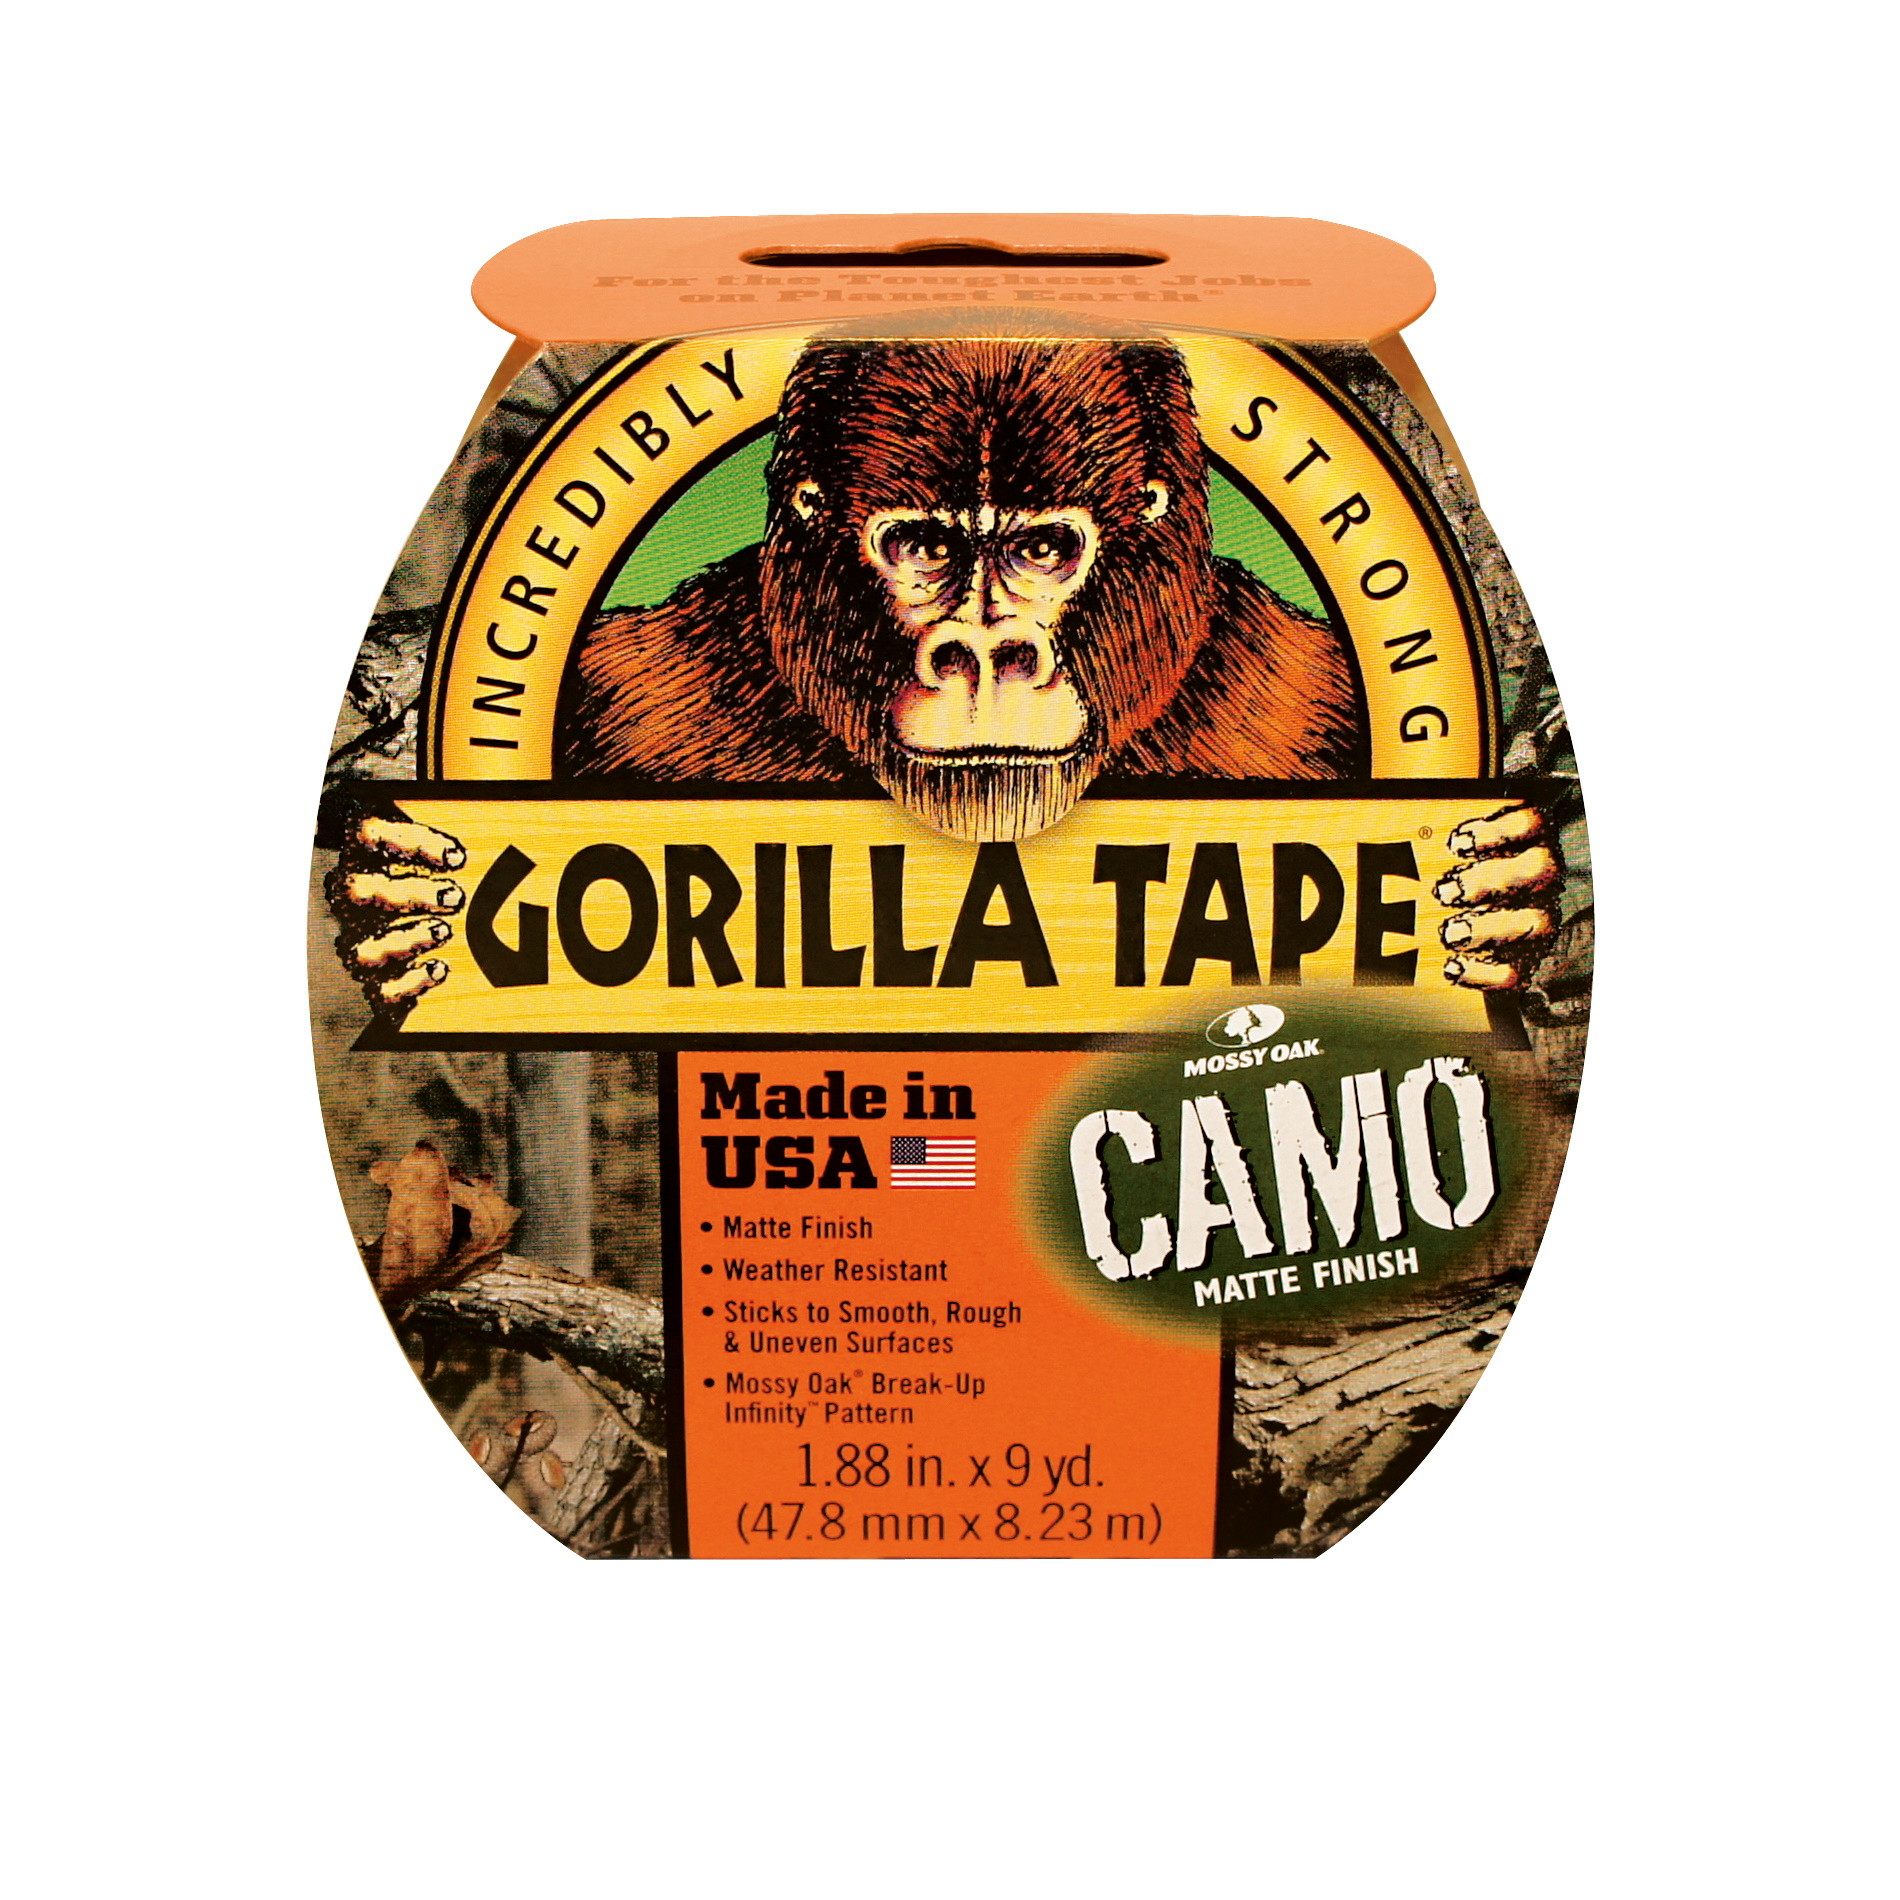 Gorilla Tape camo